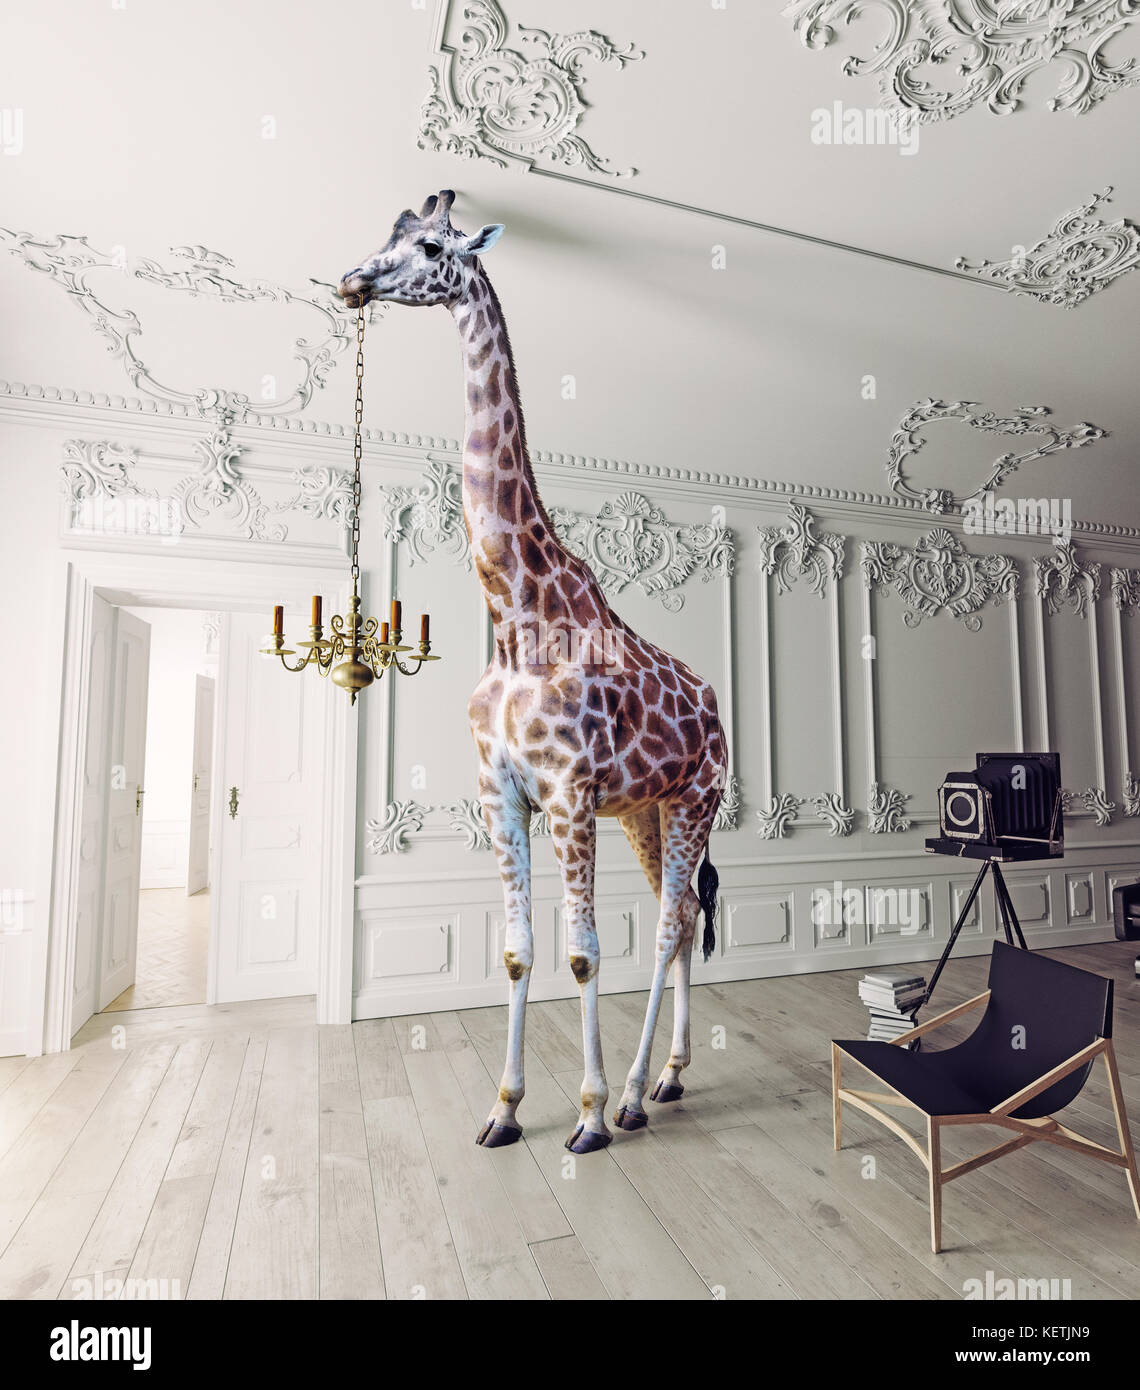 La girafe tenir le chandelier dans la décoration intérieure de luxe Banque D'Images